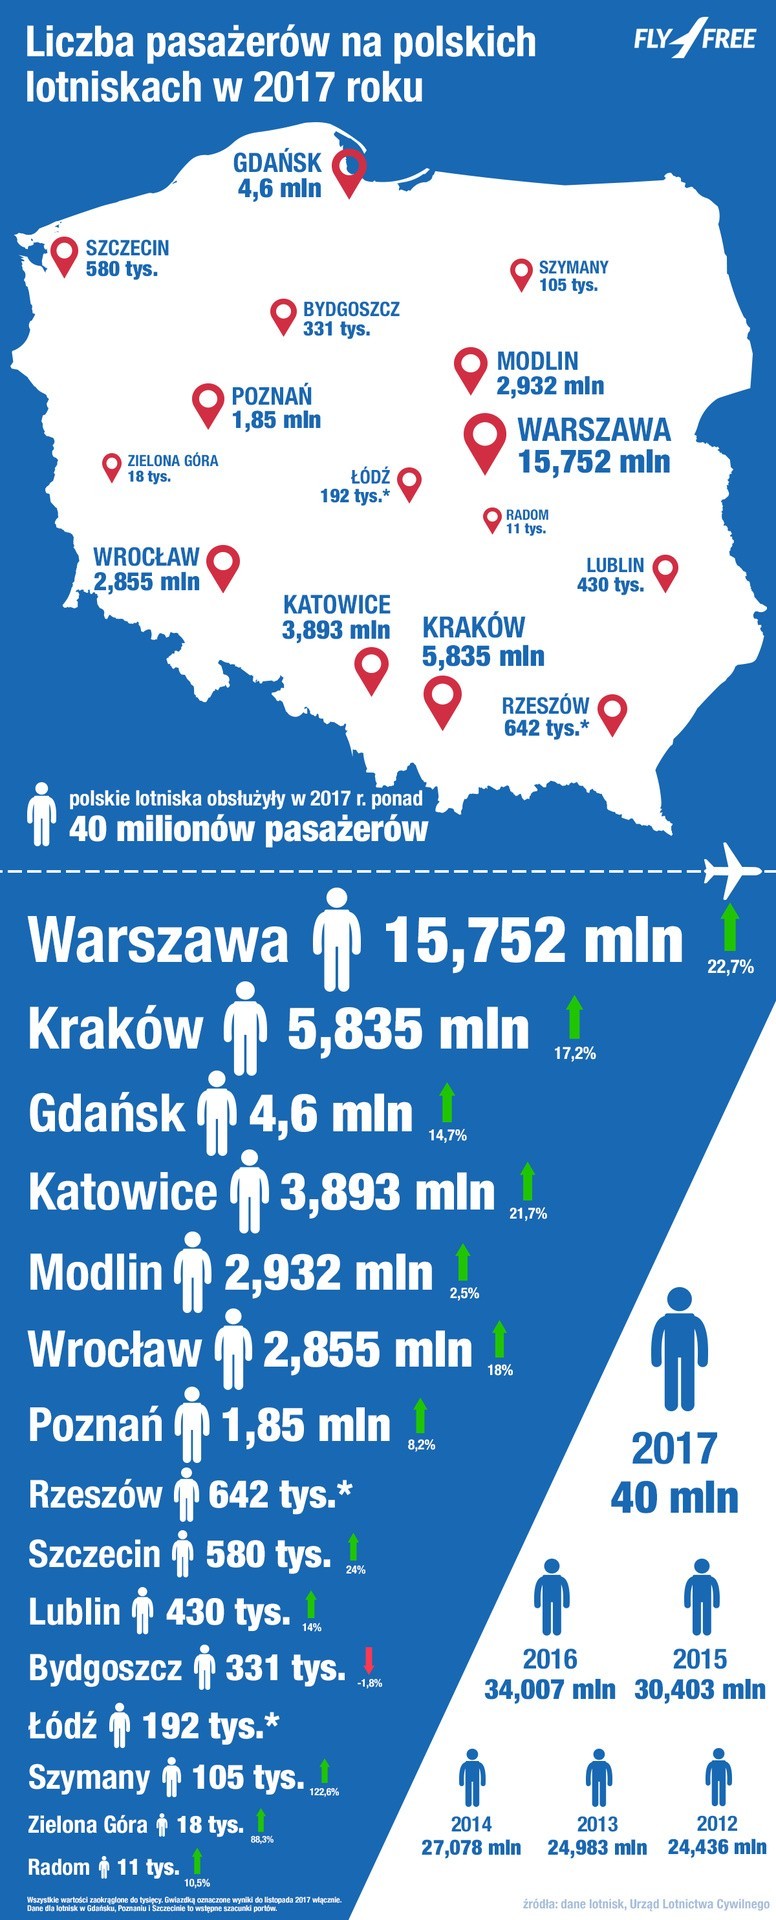 Ponad 40 mln pasażerów na polskich lotniskach w 2017 roku!...